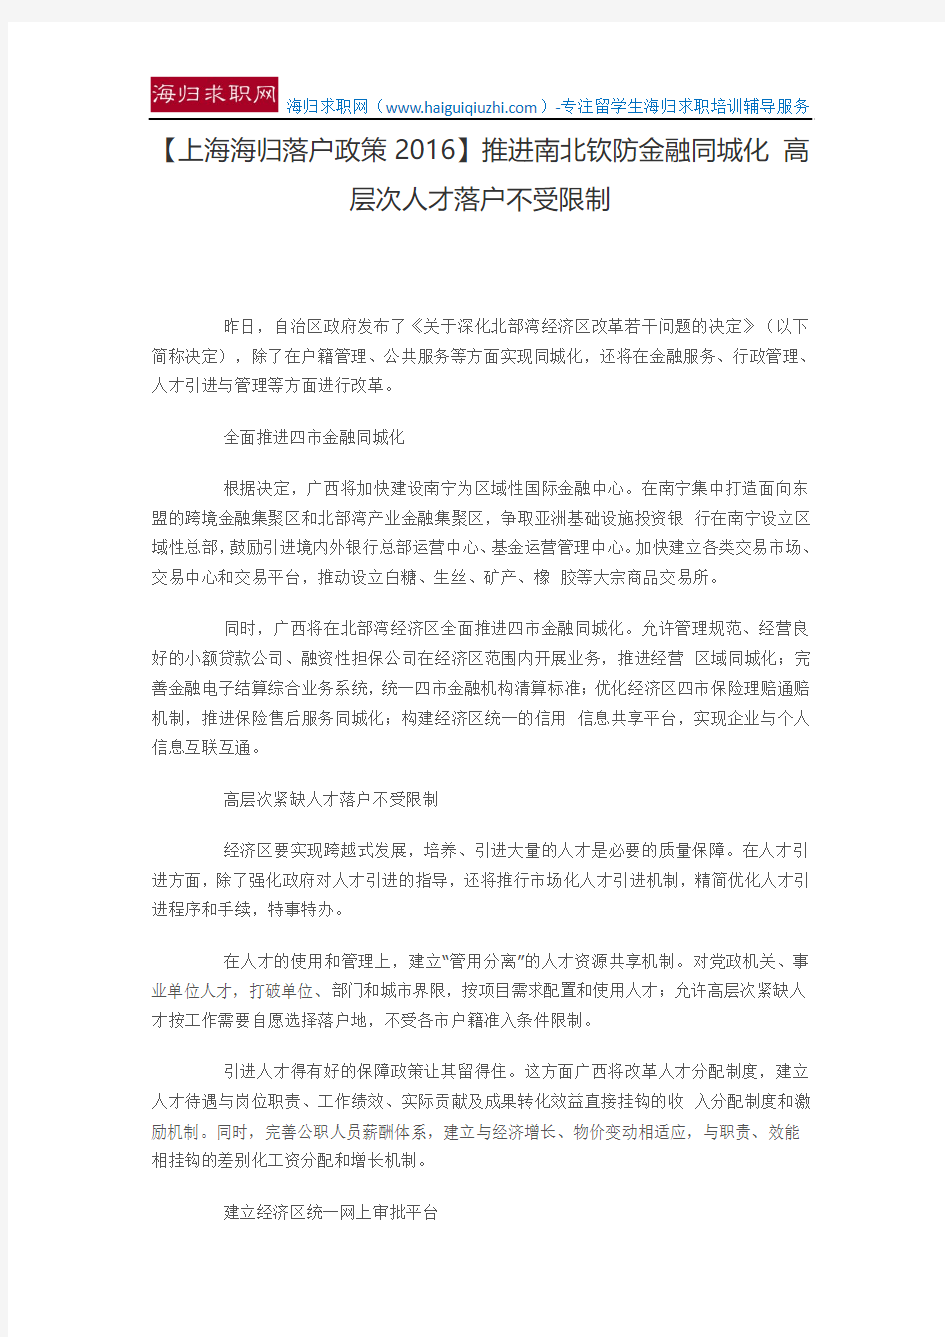 【上海海归落户政策2016】推进南北钦防金融同城化 高层次人才落户不受限制